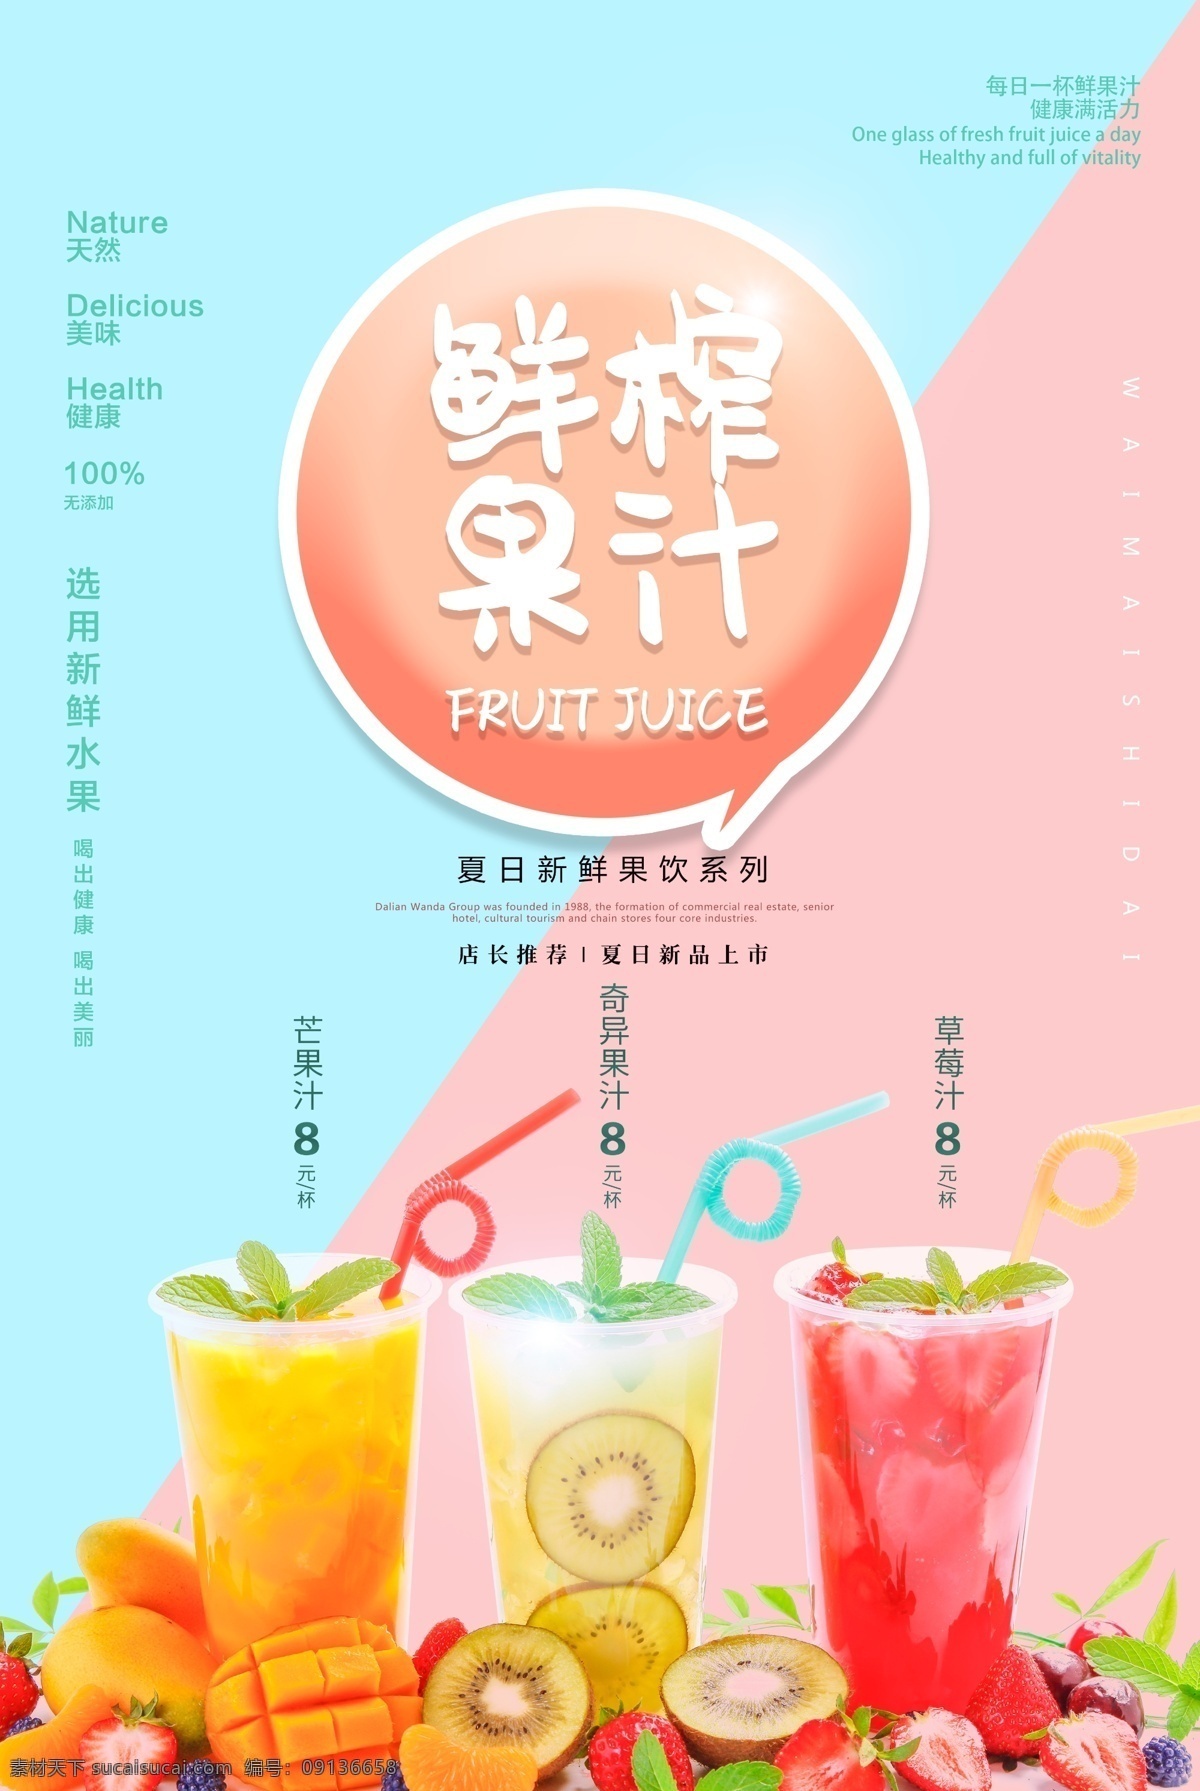 鲜榨 果汁 饮品 活动 宣传海报 鲜榨果汁 宣传 海报 饮料 甜品 类